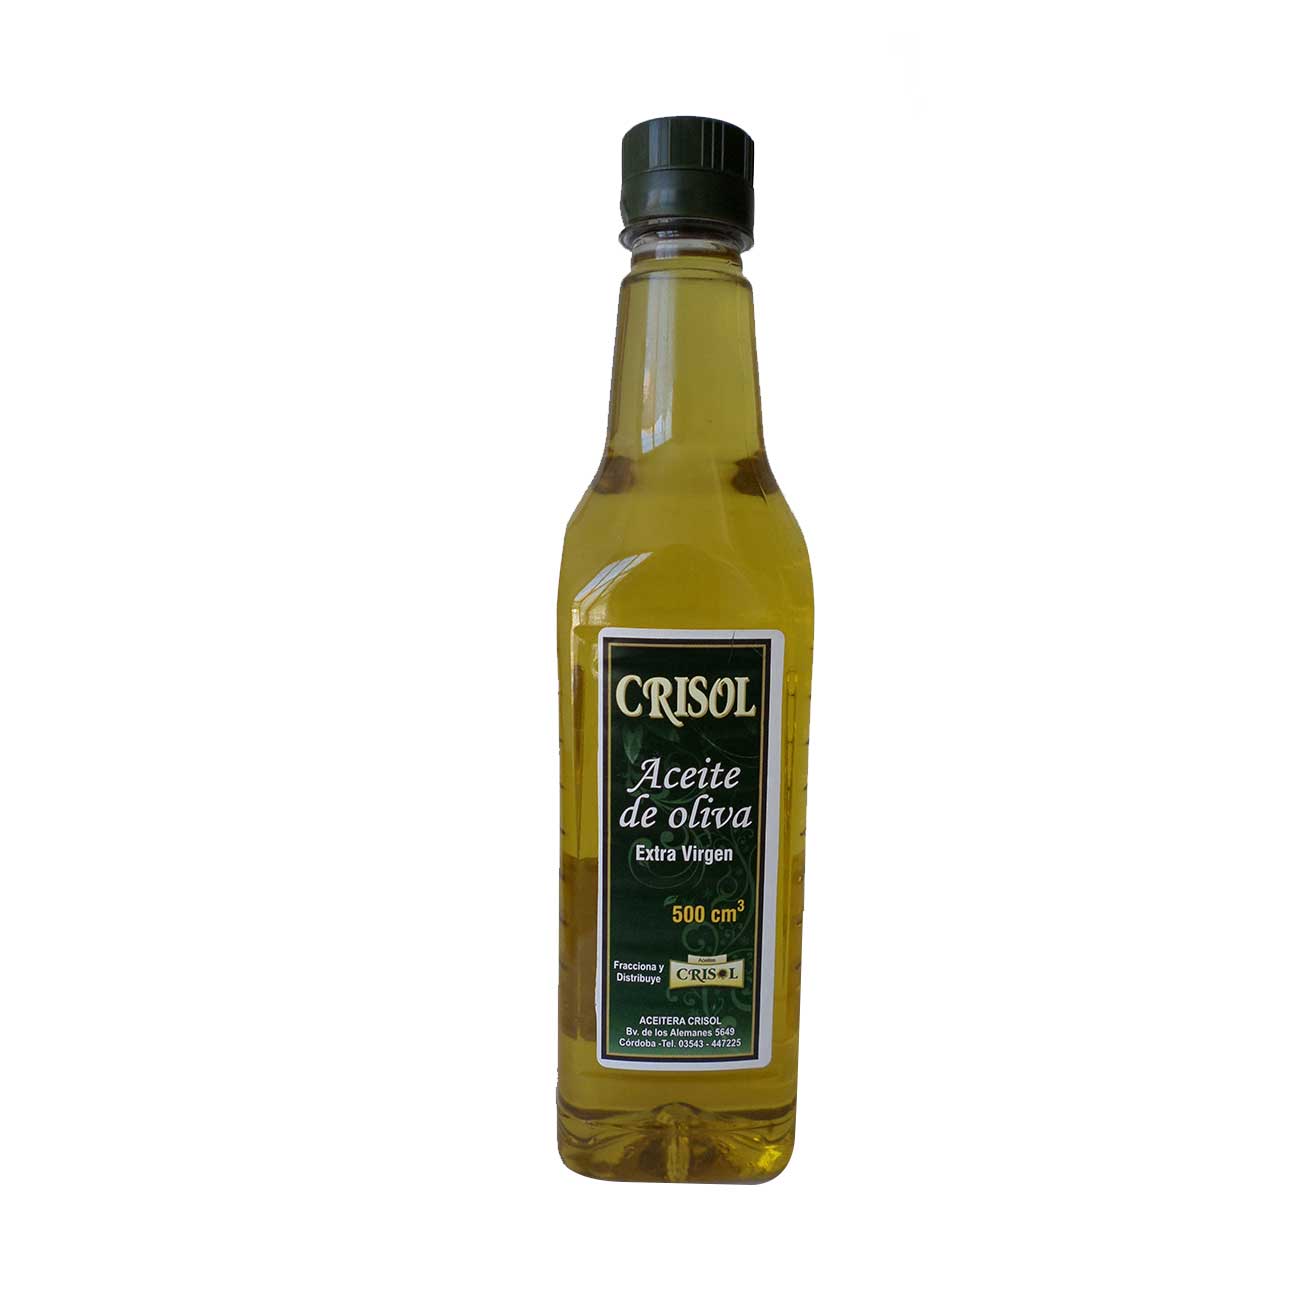 Aceite oliva 500cm3 CRISOL